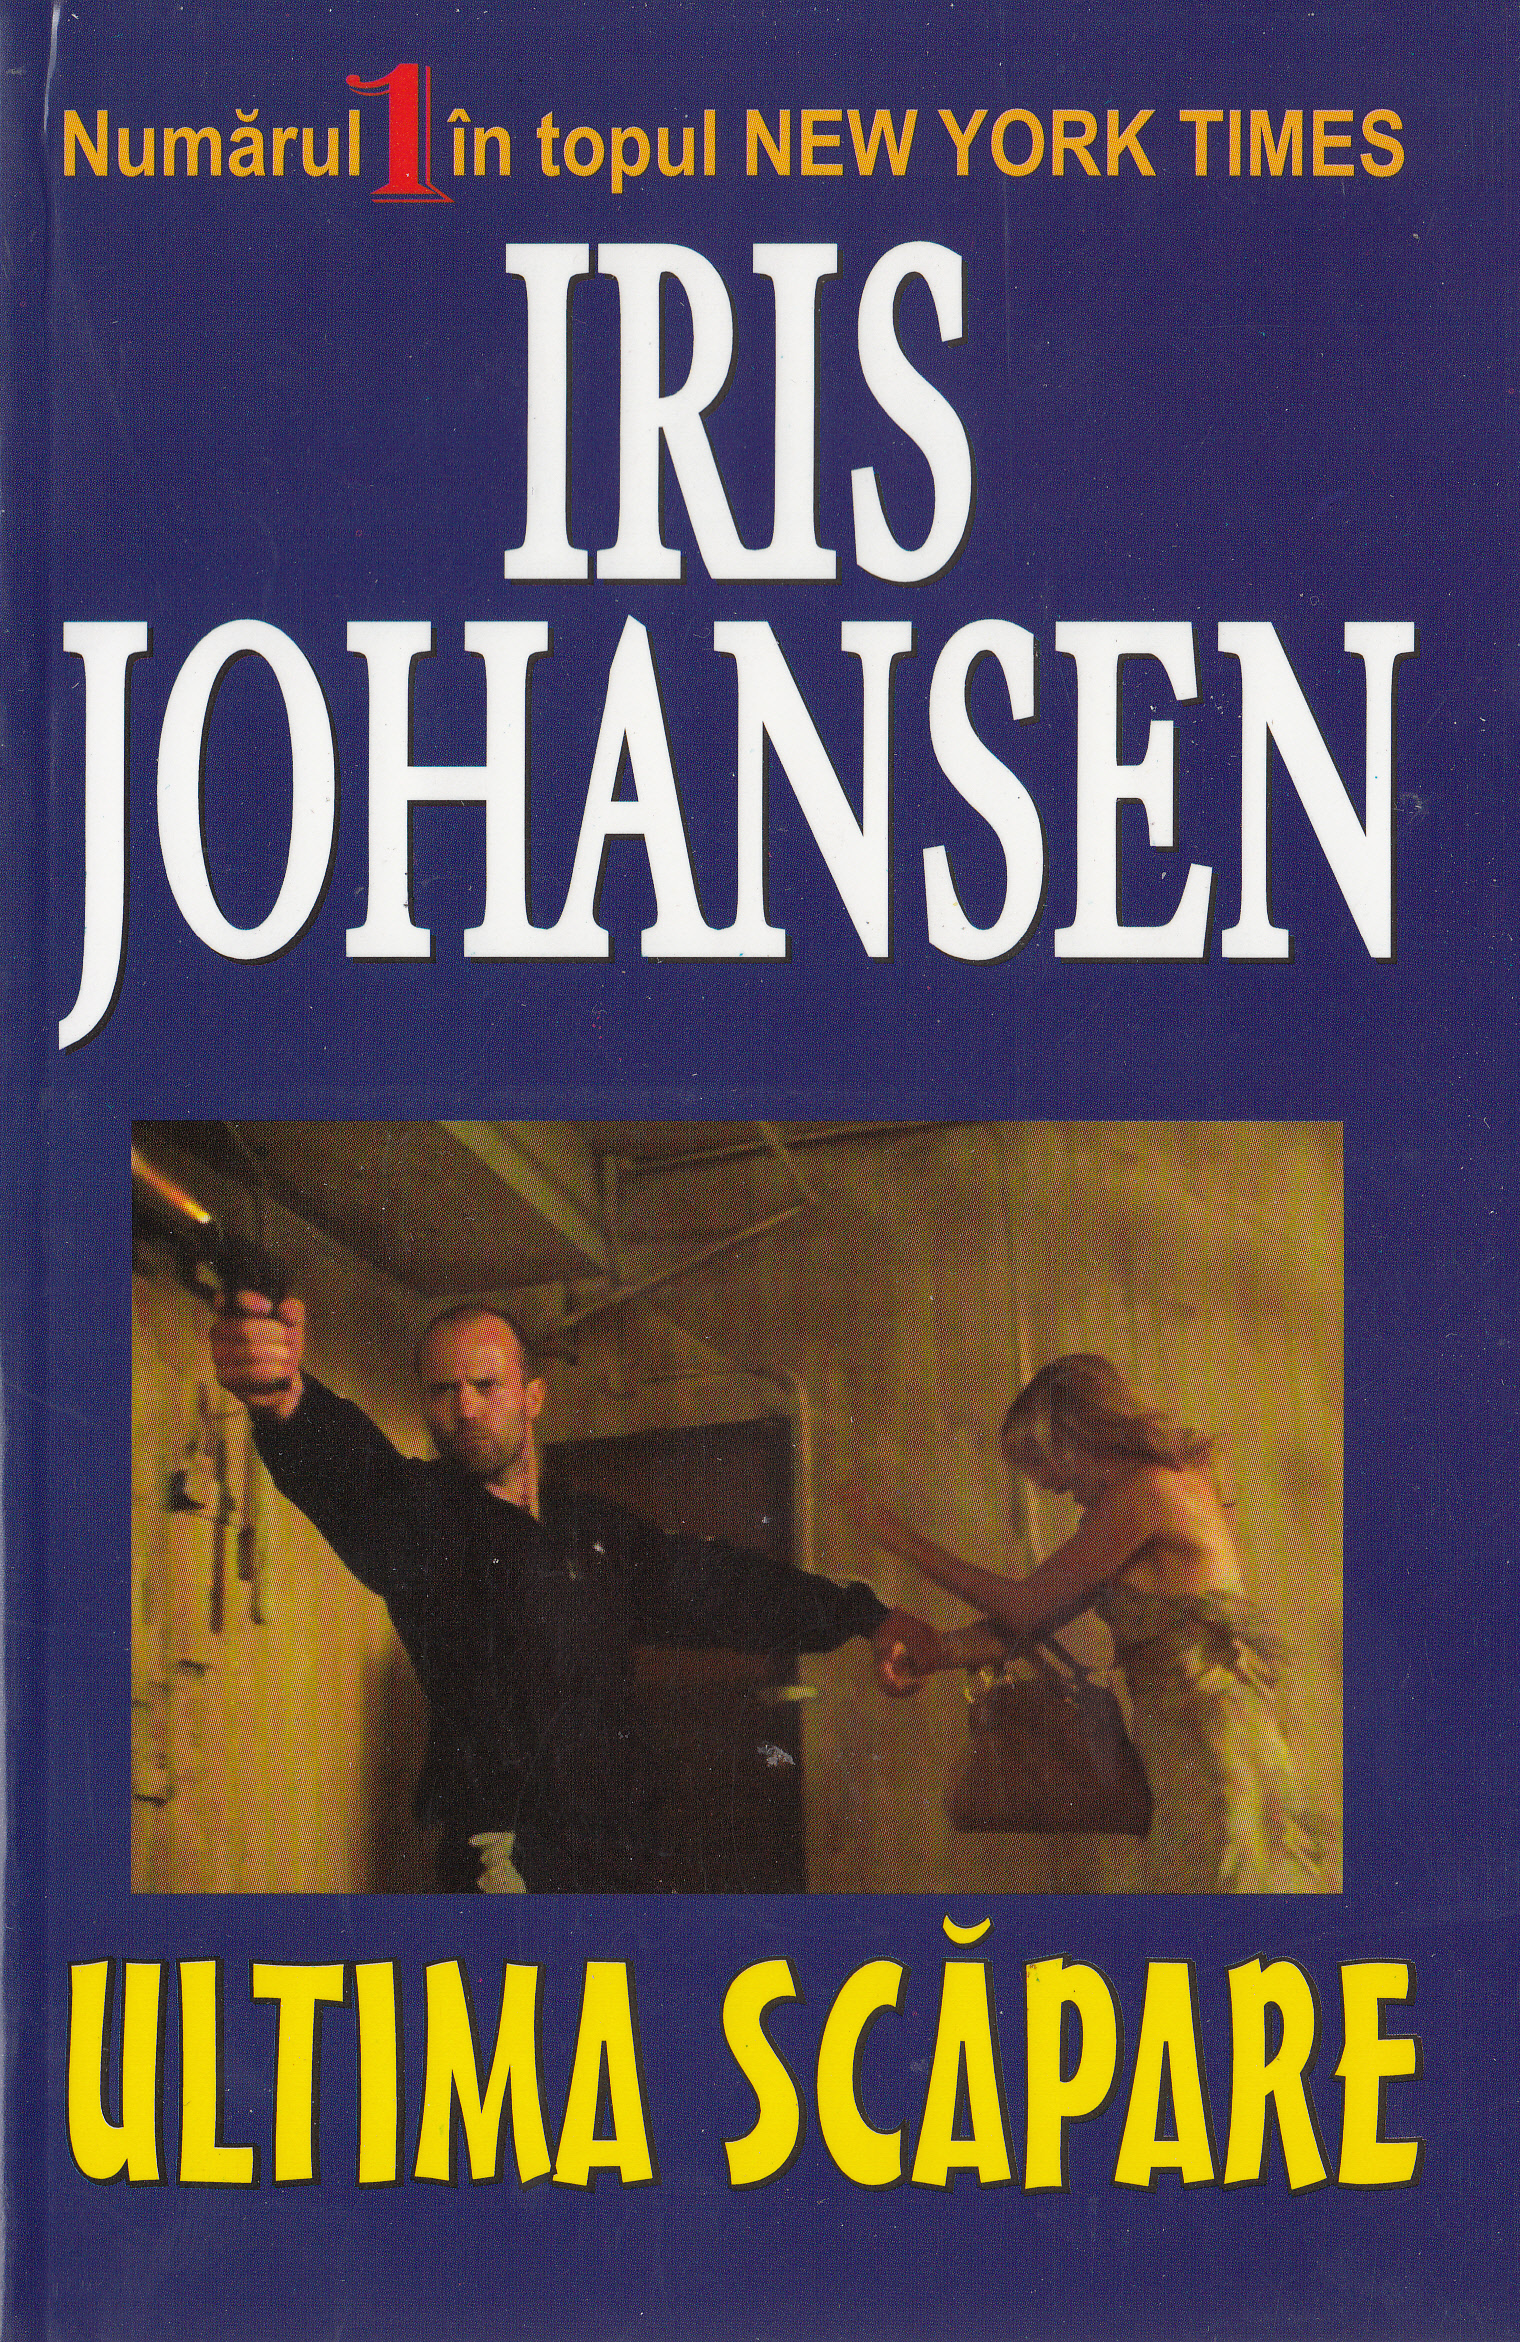 Ultima scapare - Iris Johansen